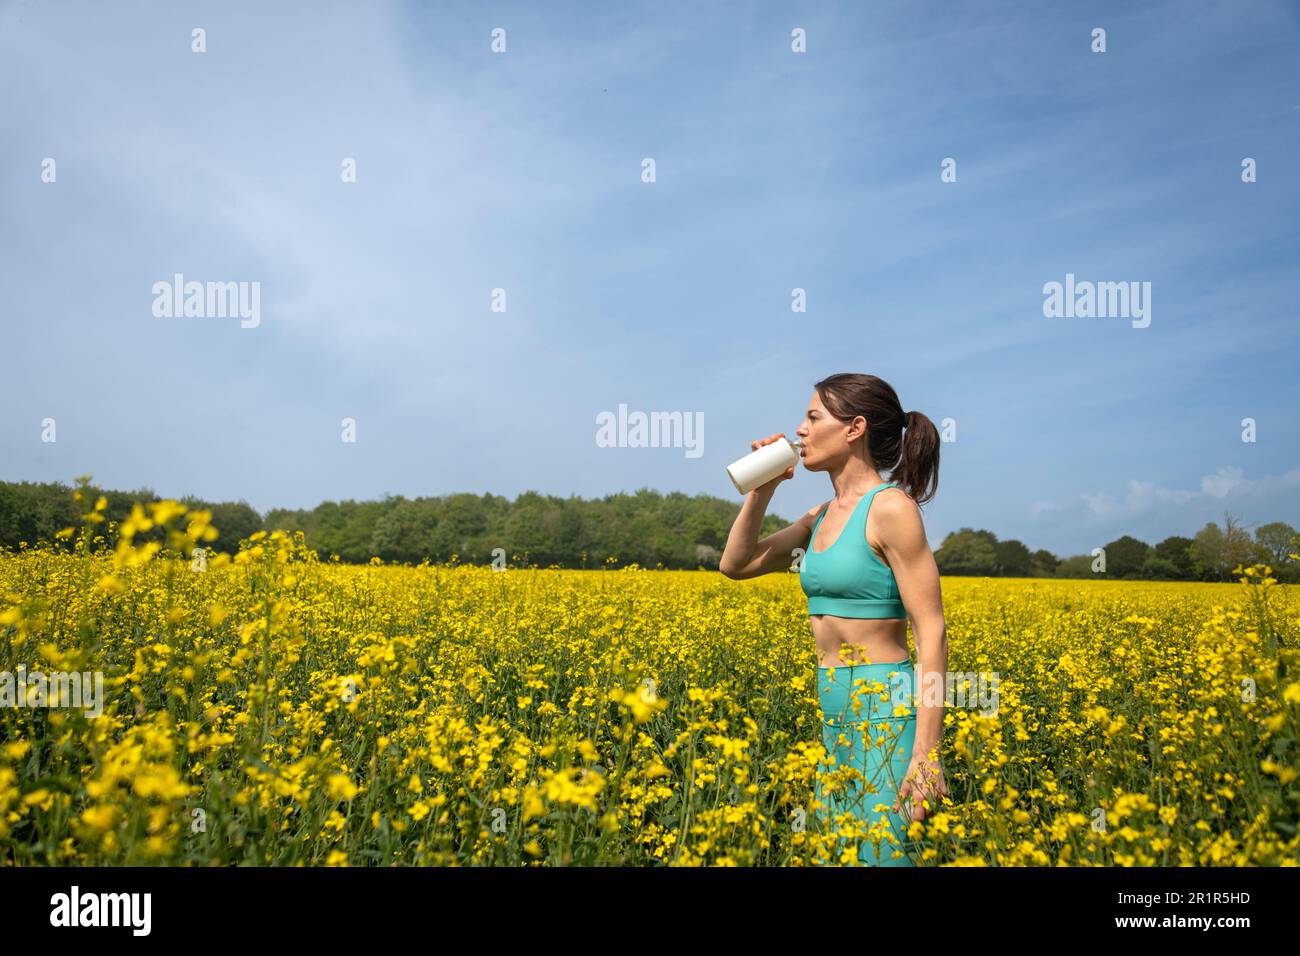 femme sportive buvant de l'eau après avoir coué dans un champ jaune Banque D'Images